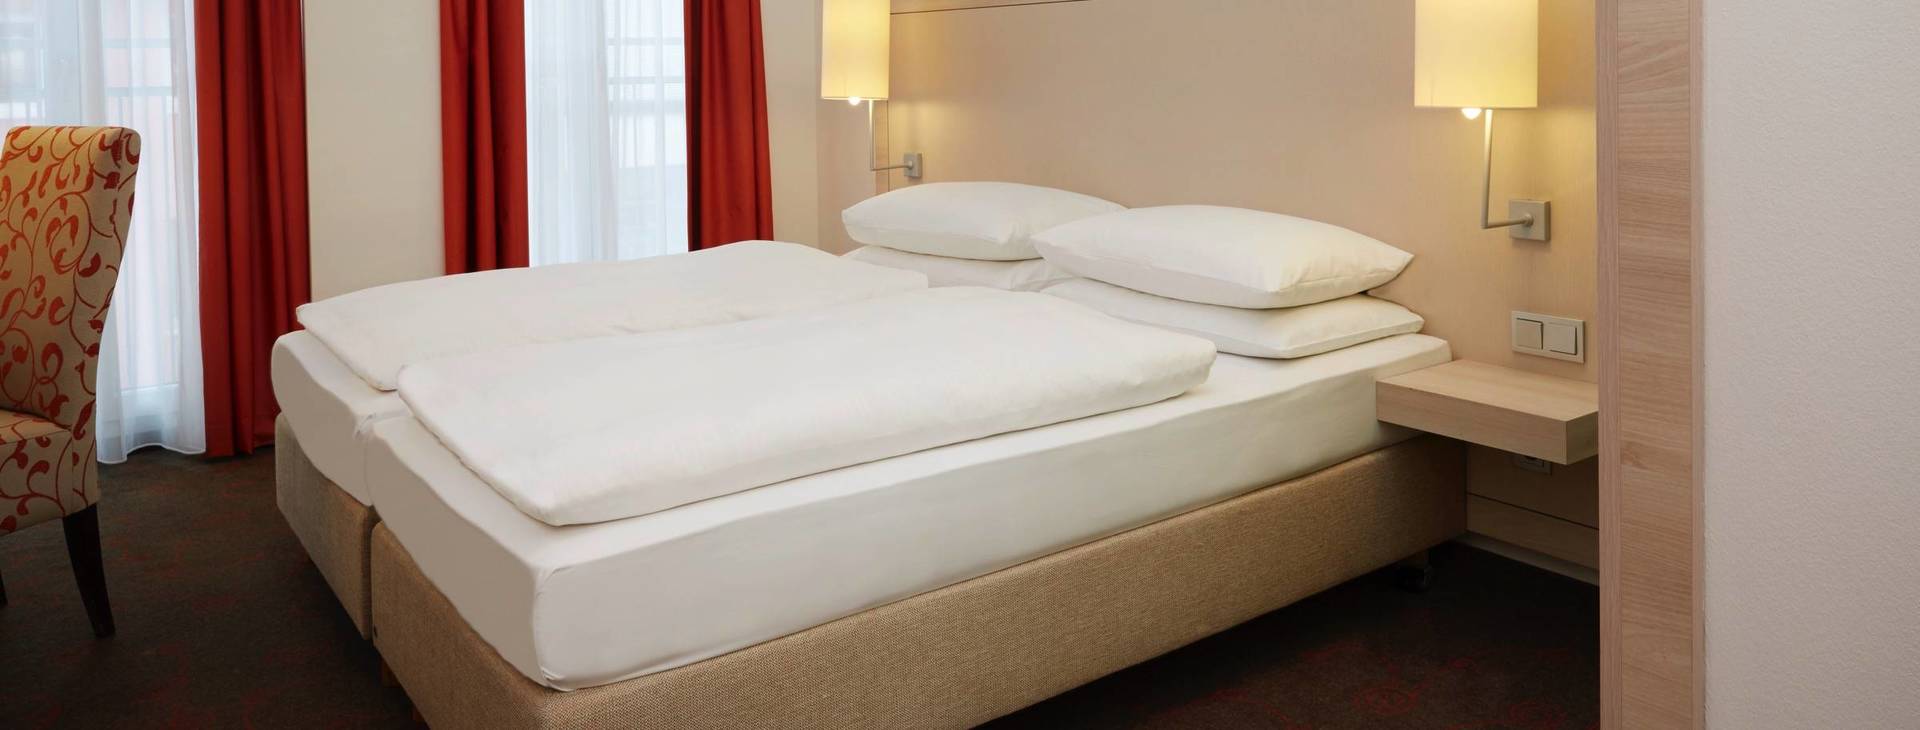 Habitaciones confort del Hotel H+ Hotel München - sitio web oficial